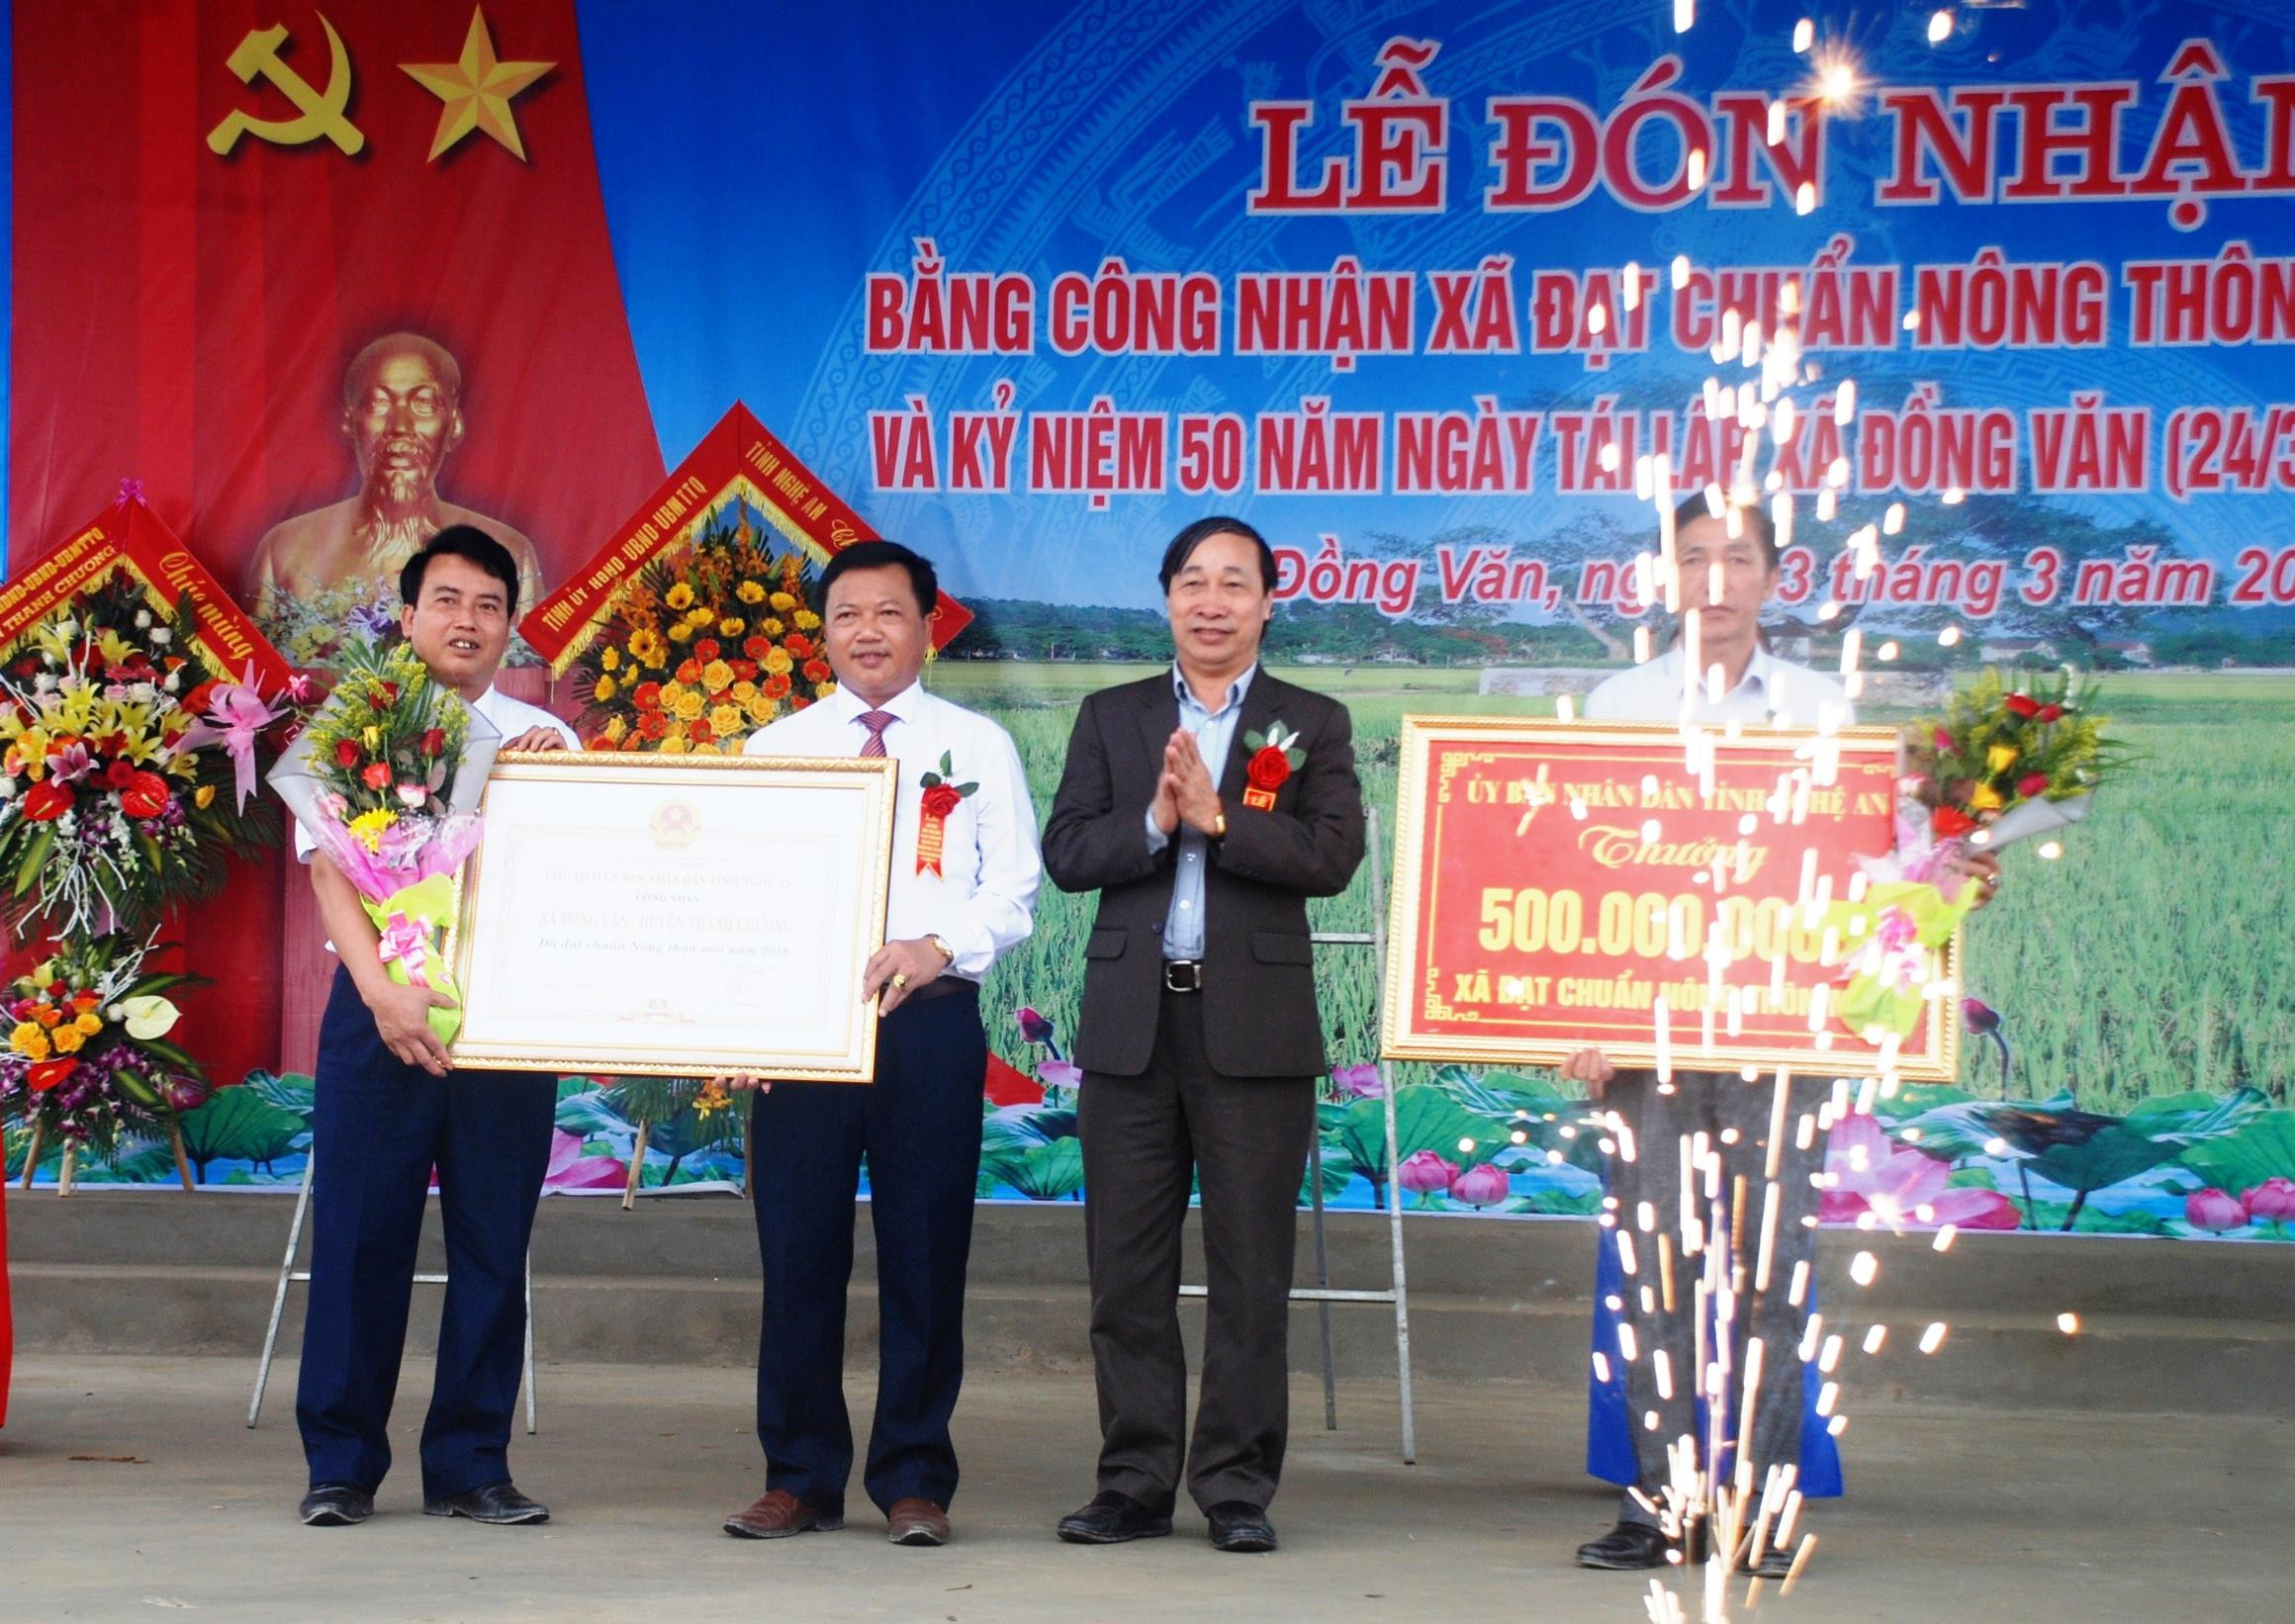 Đồng chí Nguyễn Văn Lập- Phó Giám đốc Sở Nông nghiệp & PTNT trao Bằng công  nhận Xã đạt chuẩn Nông thôn mới và phần thưởng 500 triệu đồng cho lãnh đạo xã Đồng Văn.